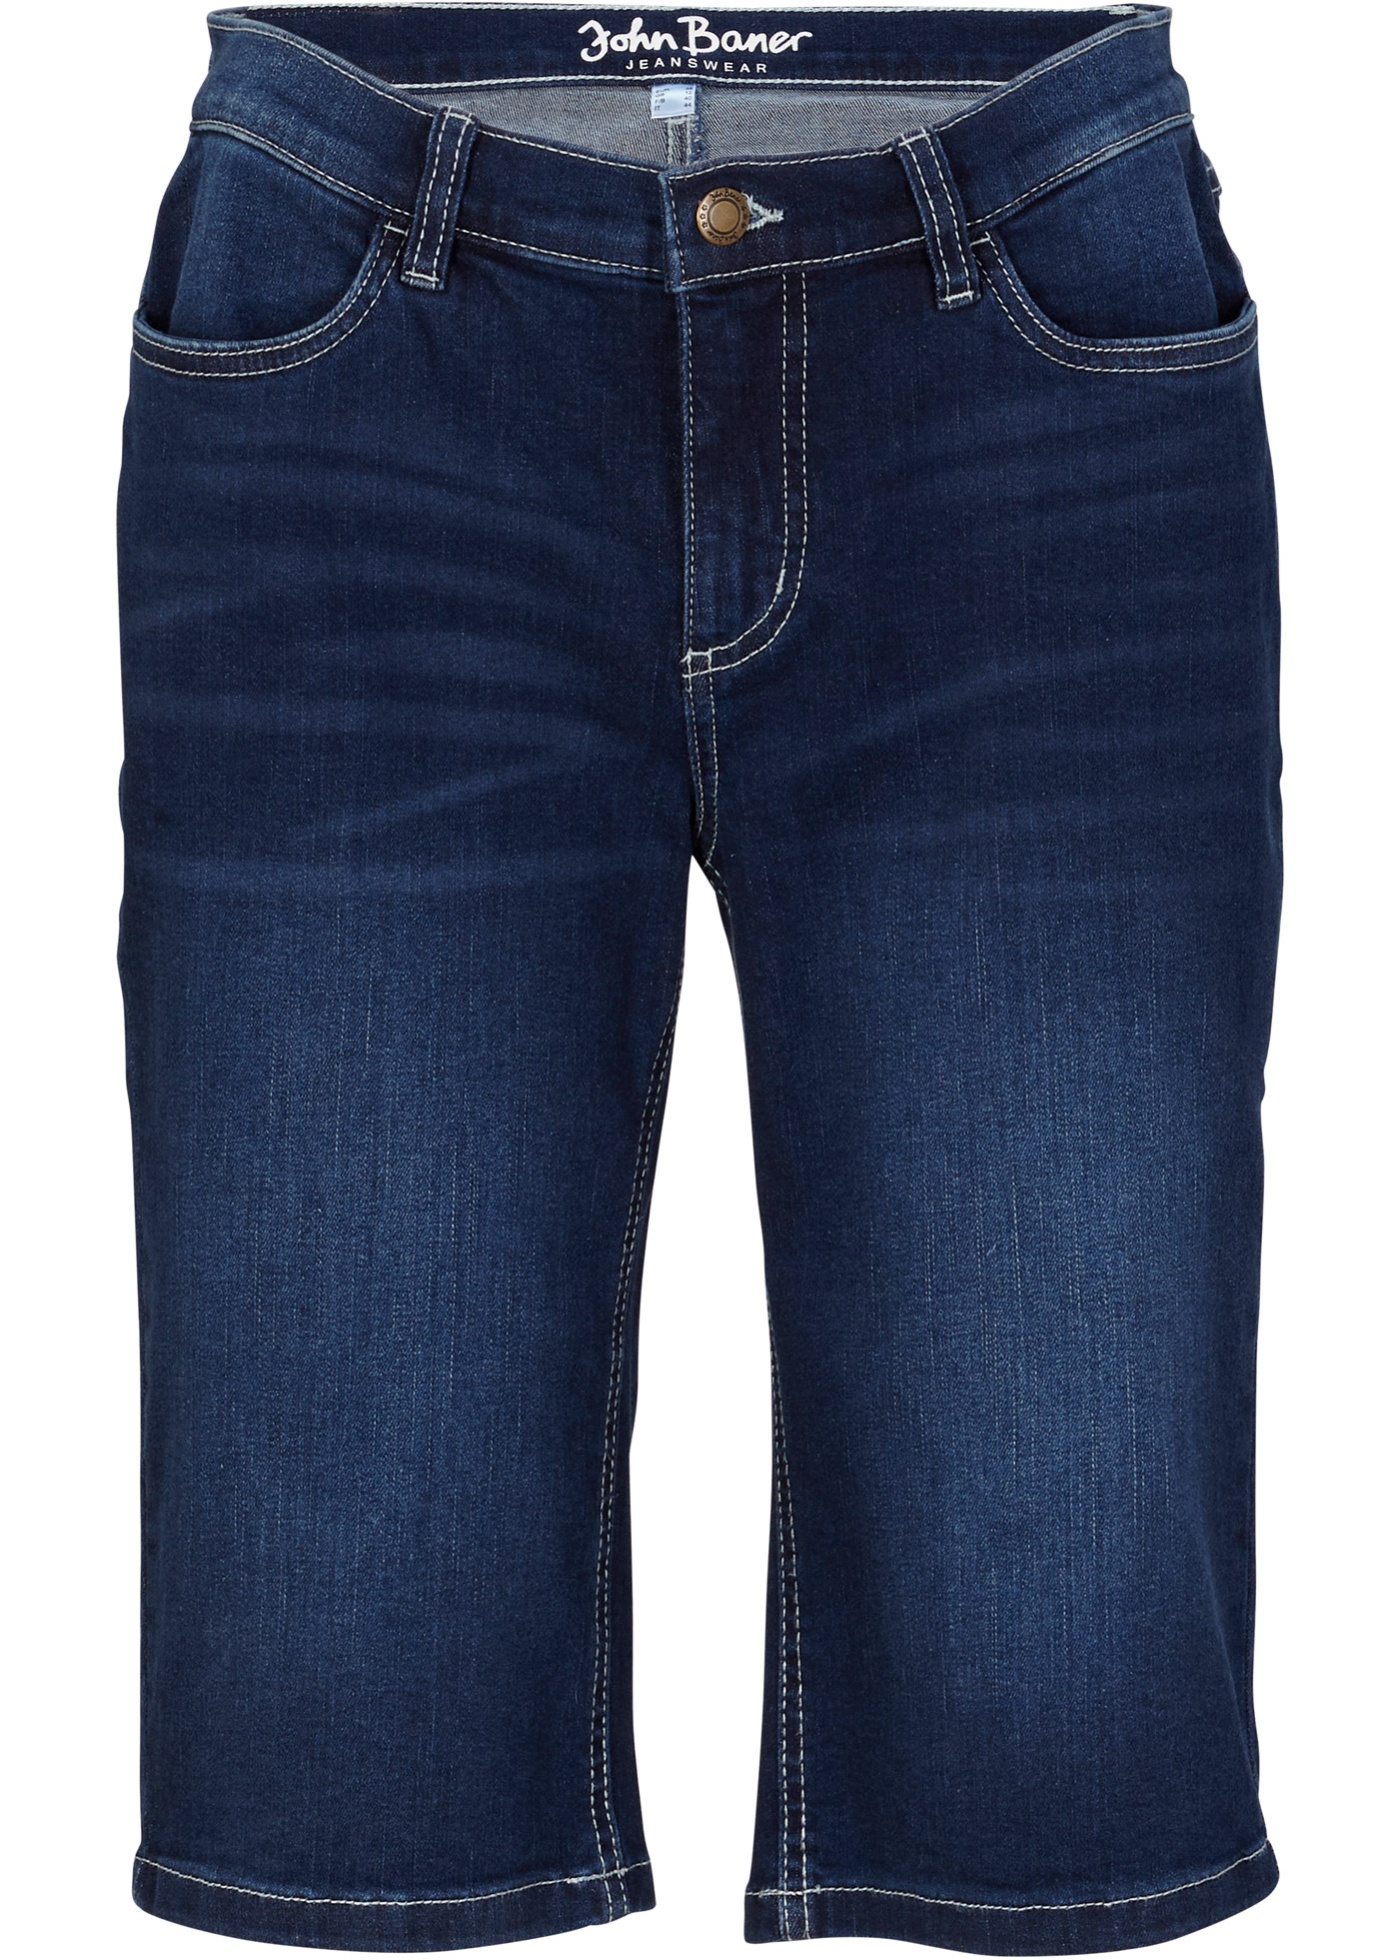 Bermuda comfort stretch jeans